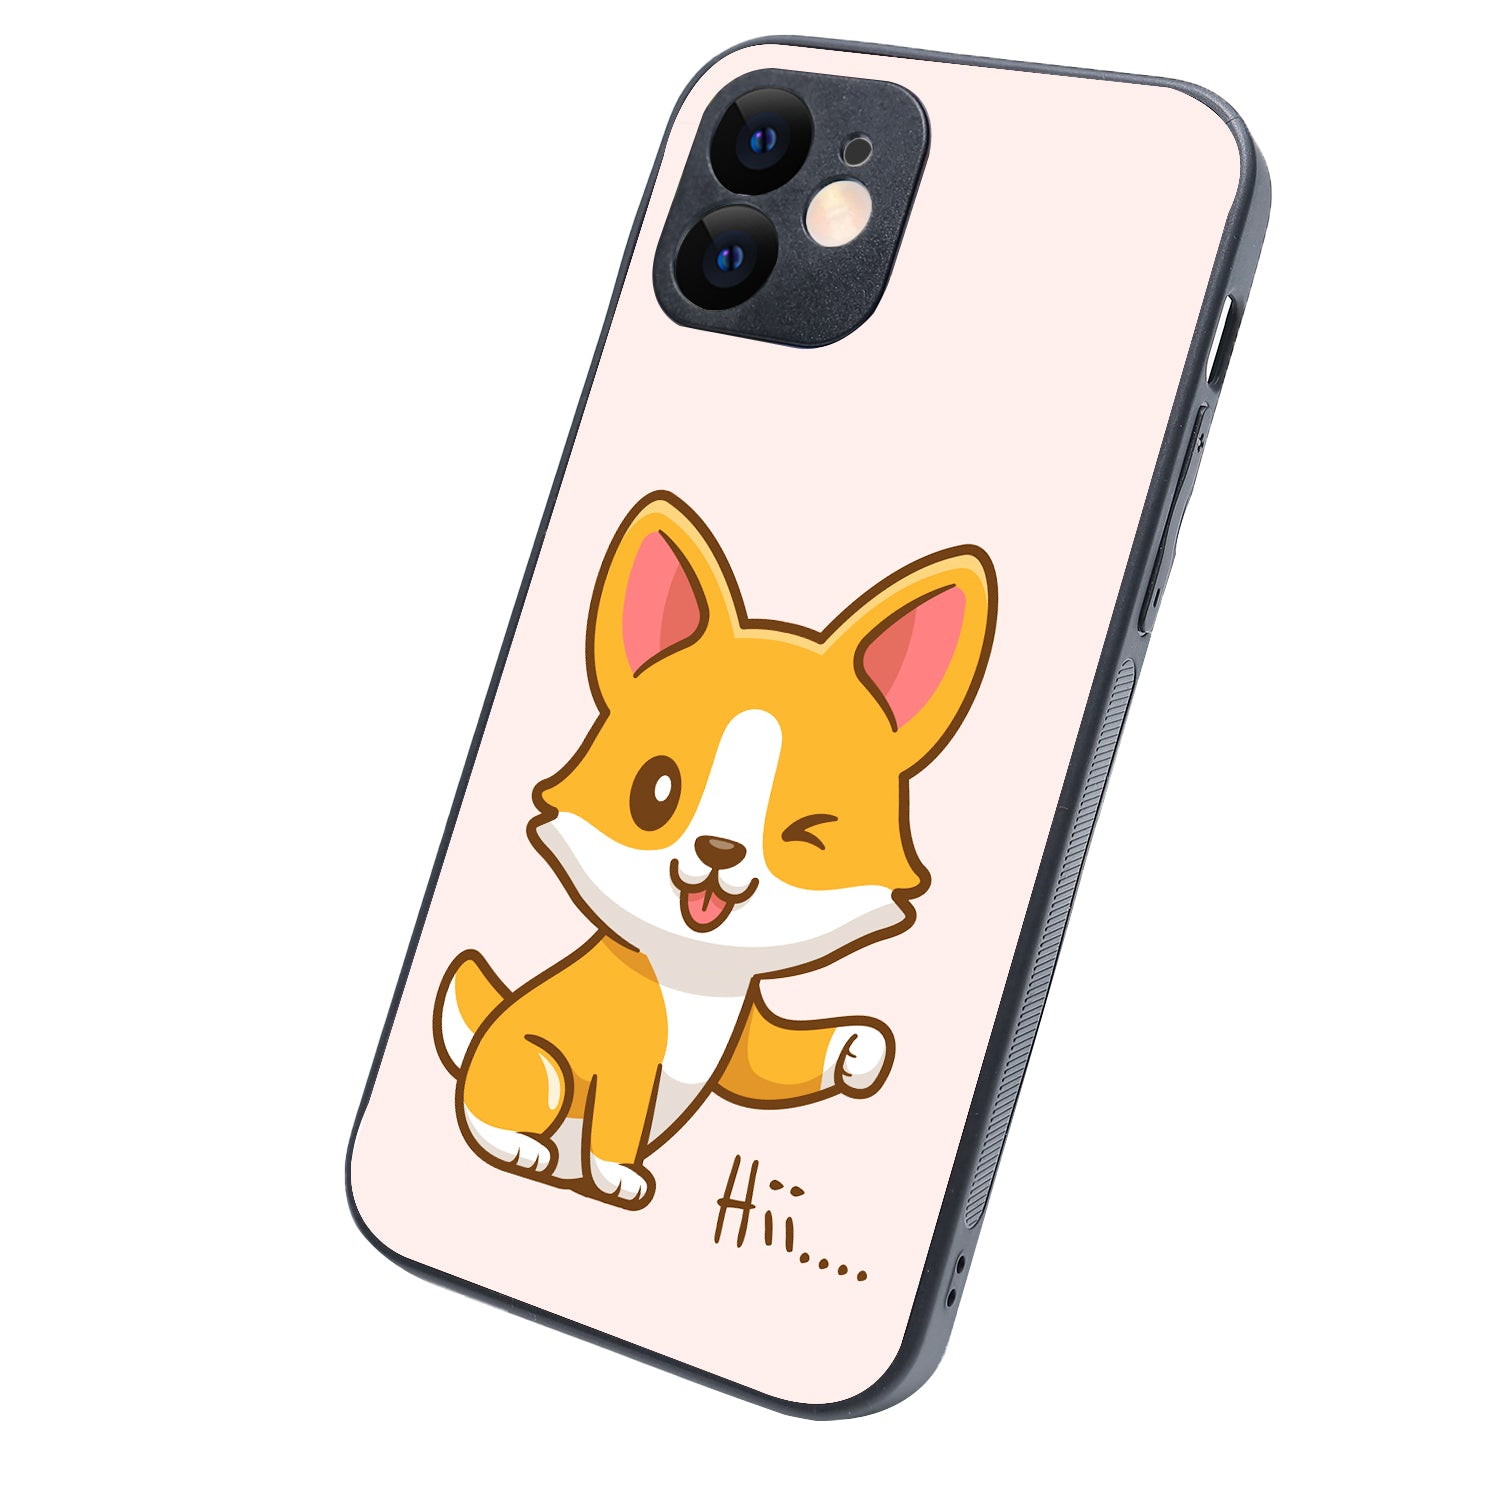 Hi Cute Bff iPhone 12 Case